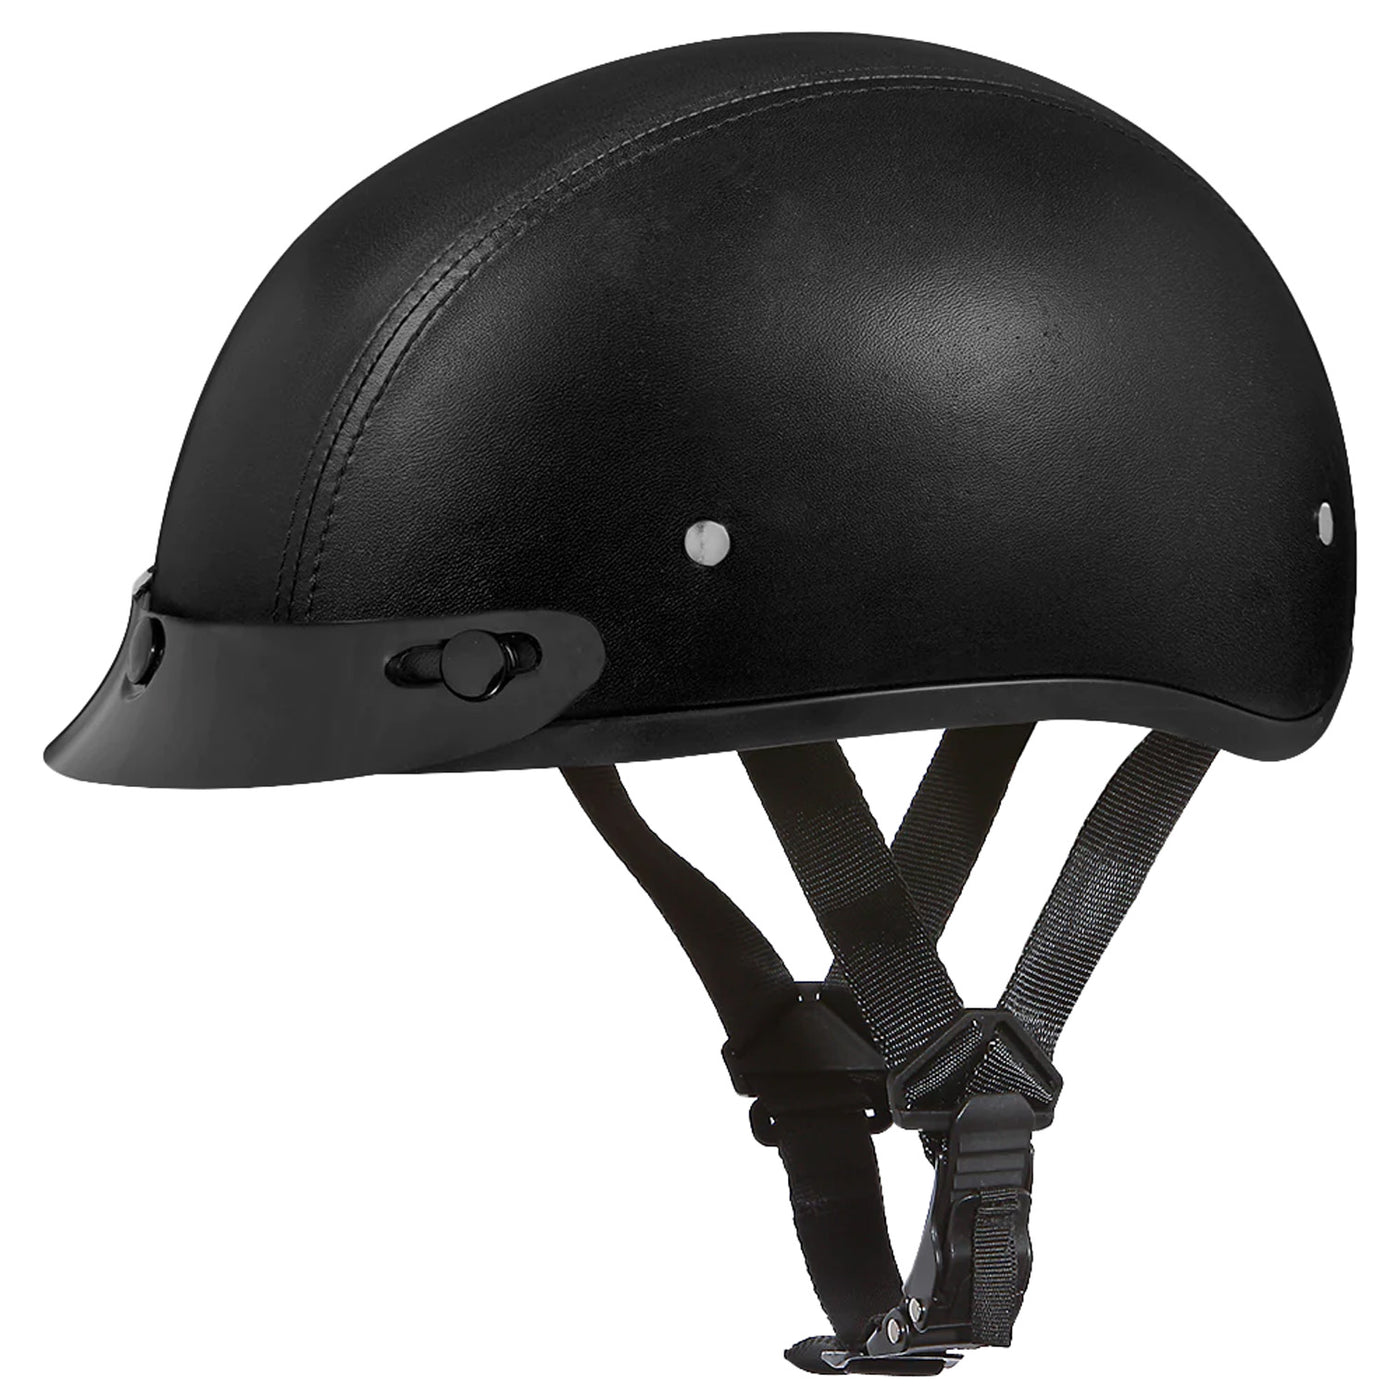 Daytona Helmets D.O.T. Skull Cap - Leather Covered